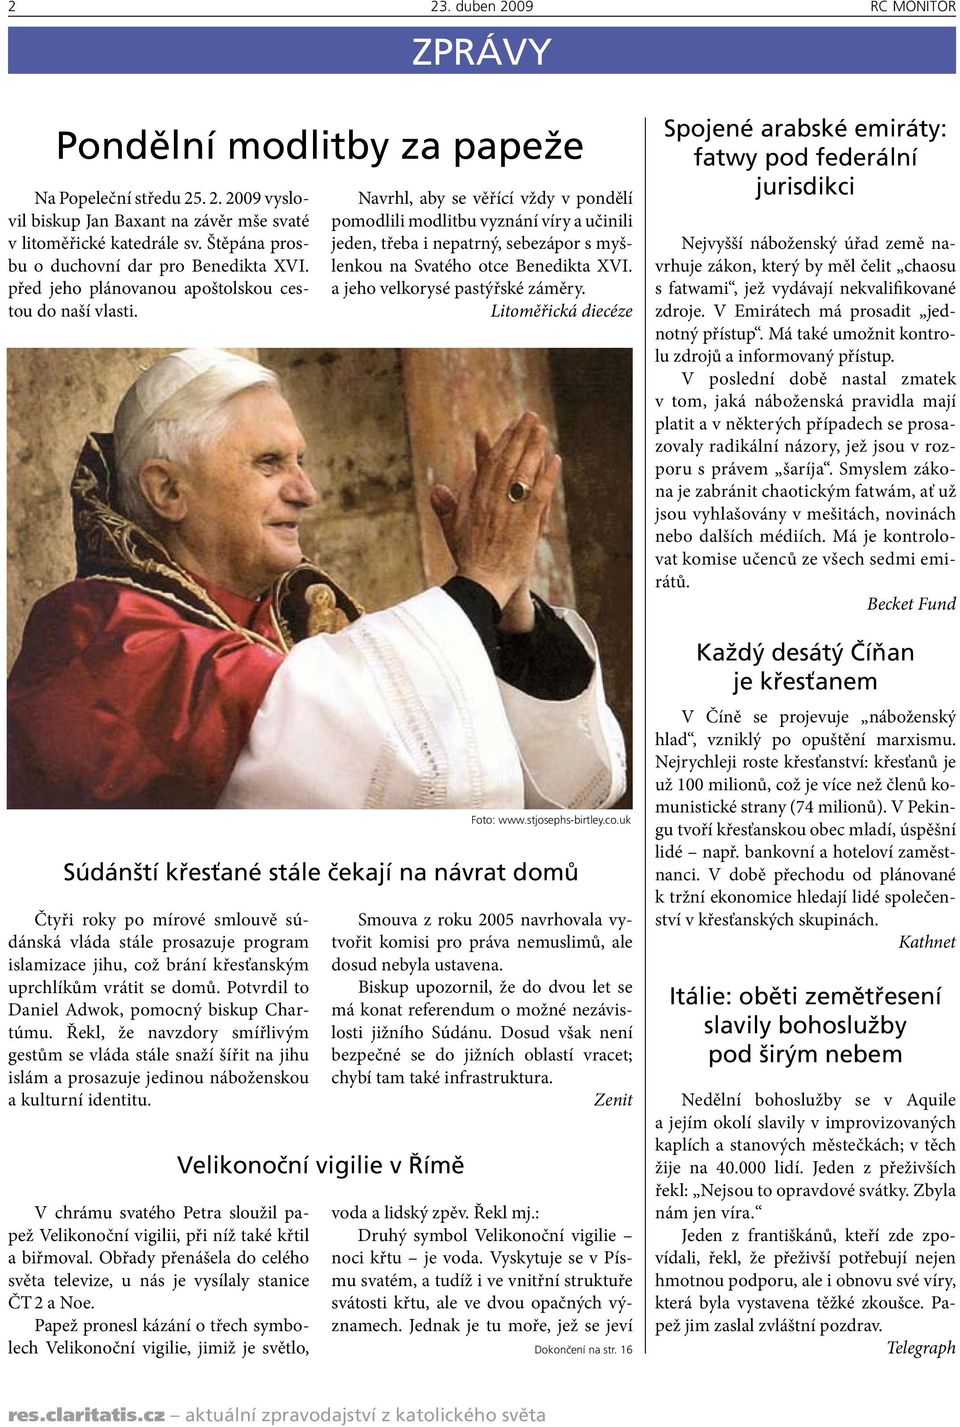 Navrhl, aby se věřící vždy v pondělí pomodlili modlitbu vyznání víry a učinili jeden, třeba i nepatrný, sebezápor s myšlenkou na Svatého otce Benedikta XVI. a jeho velkorysé pastýřské záměry.